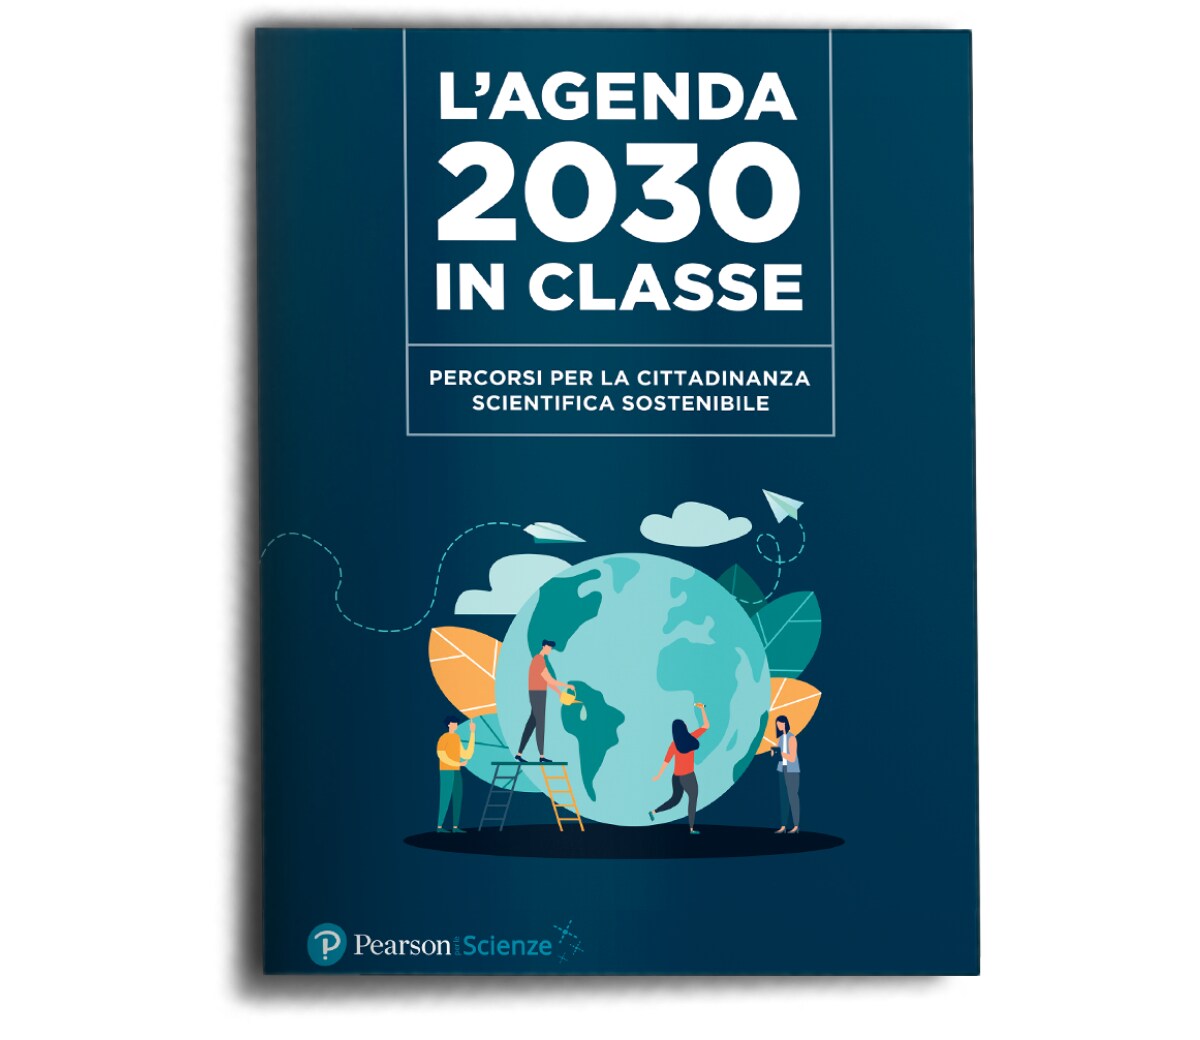 Agenda 2030 cover